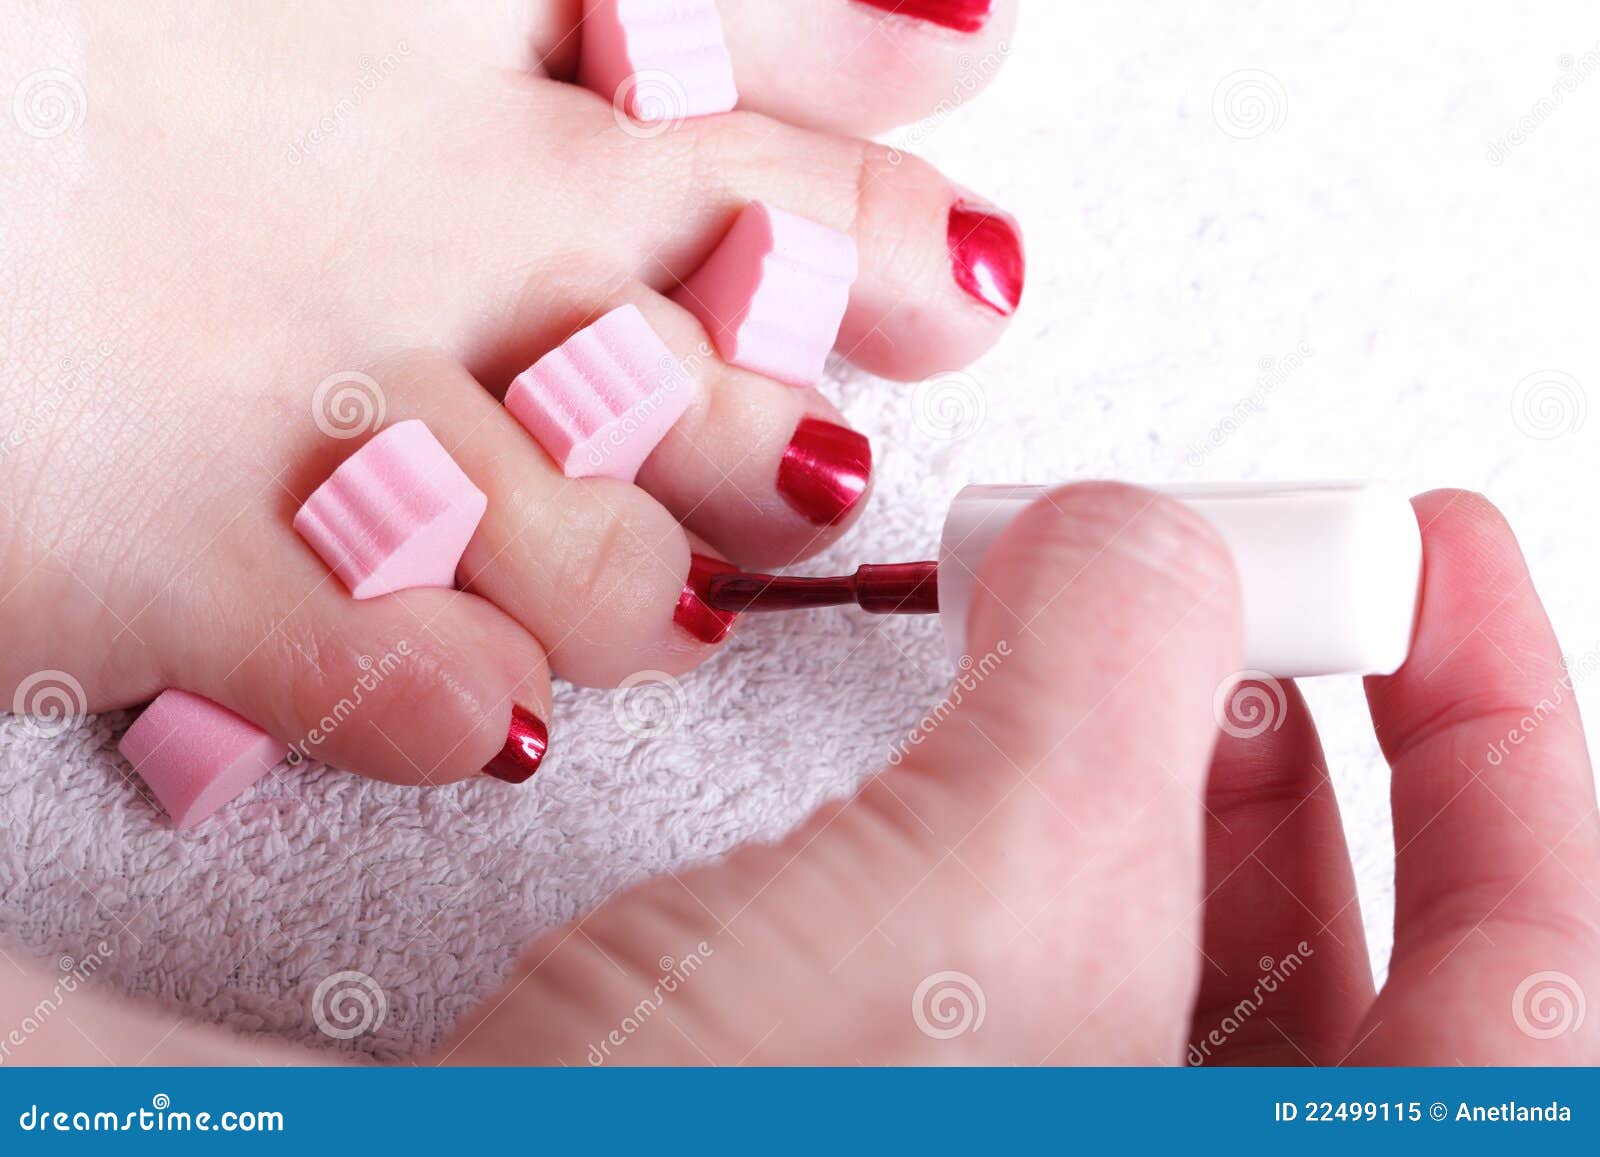 Female Feet Red Polished Nails Stock Image - Image of elegant ...